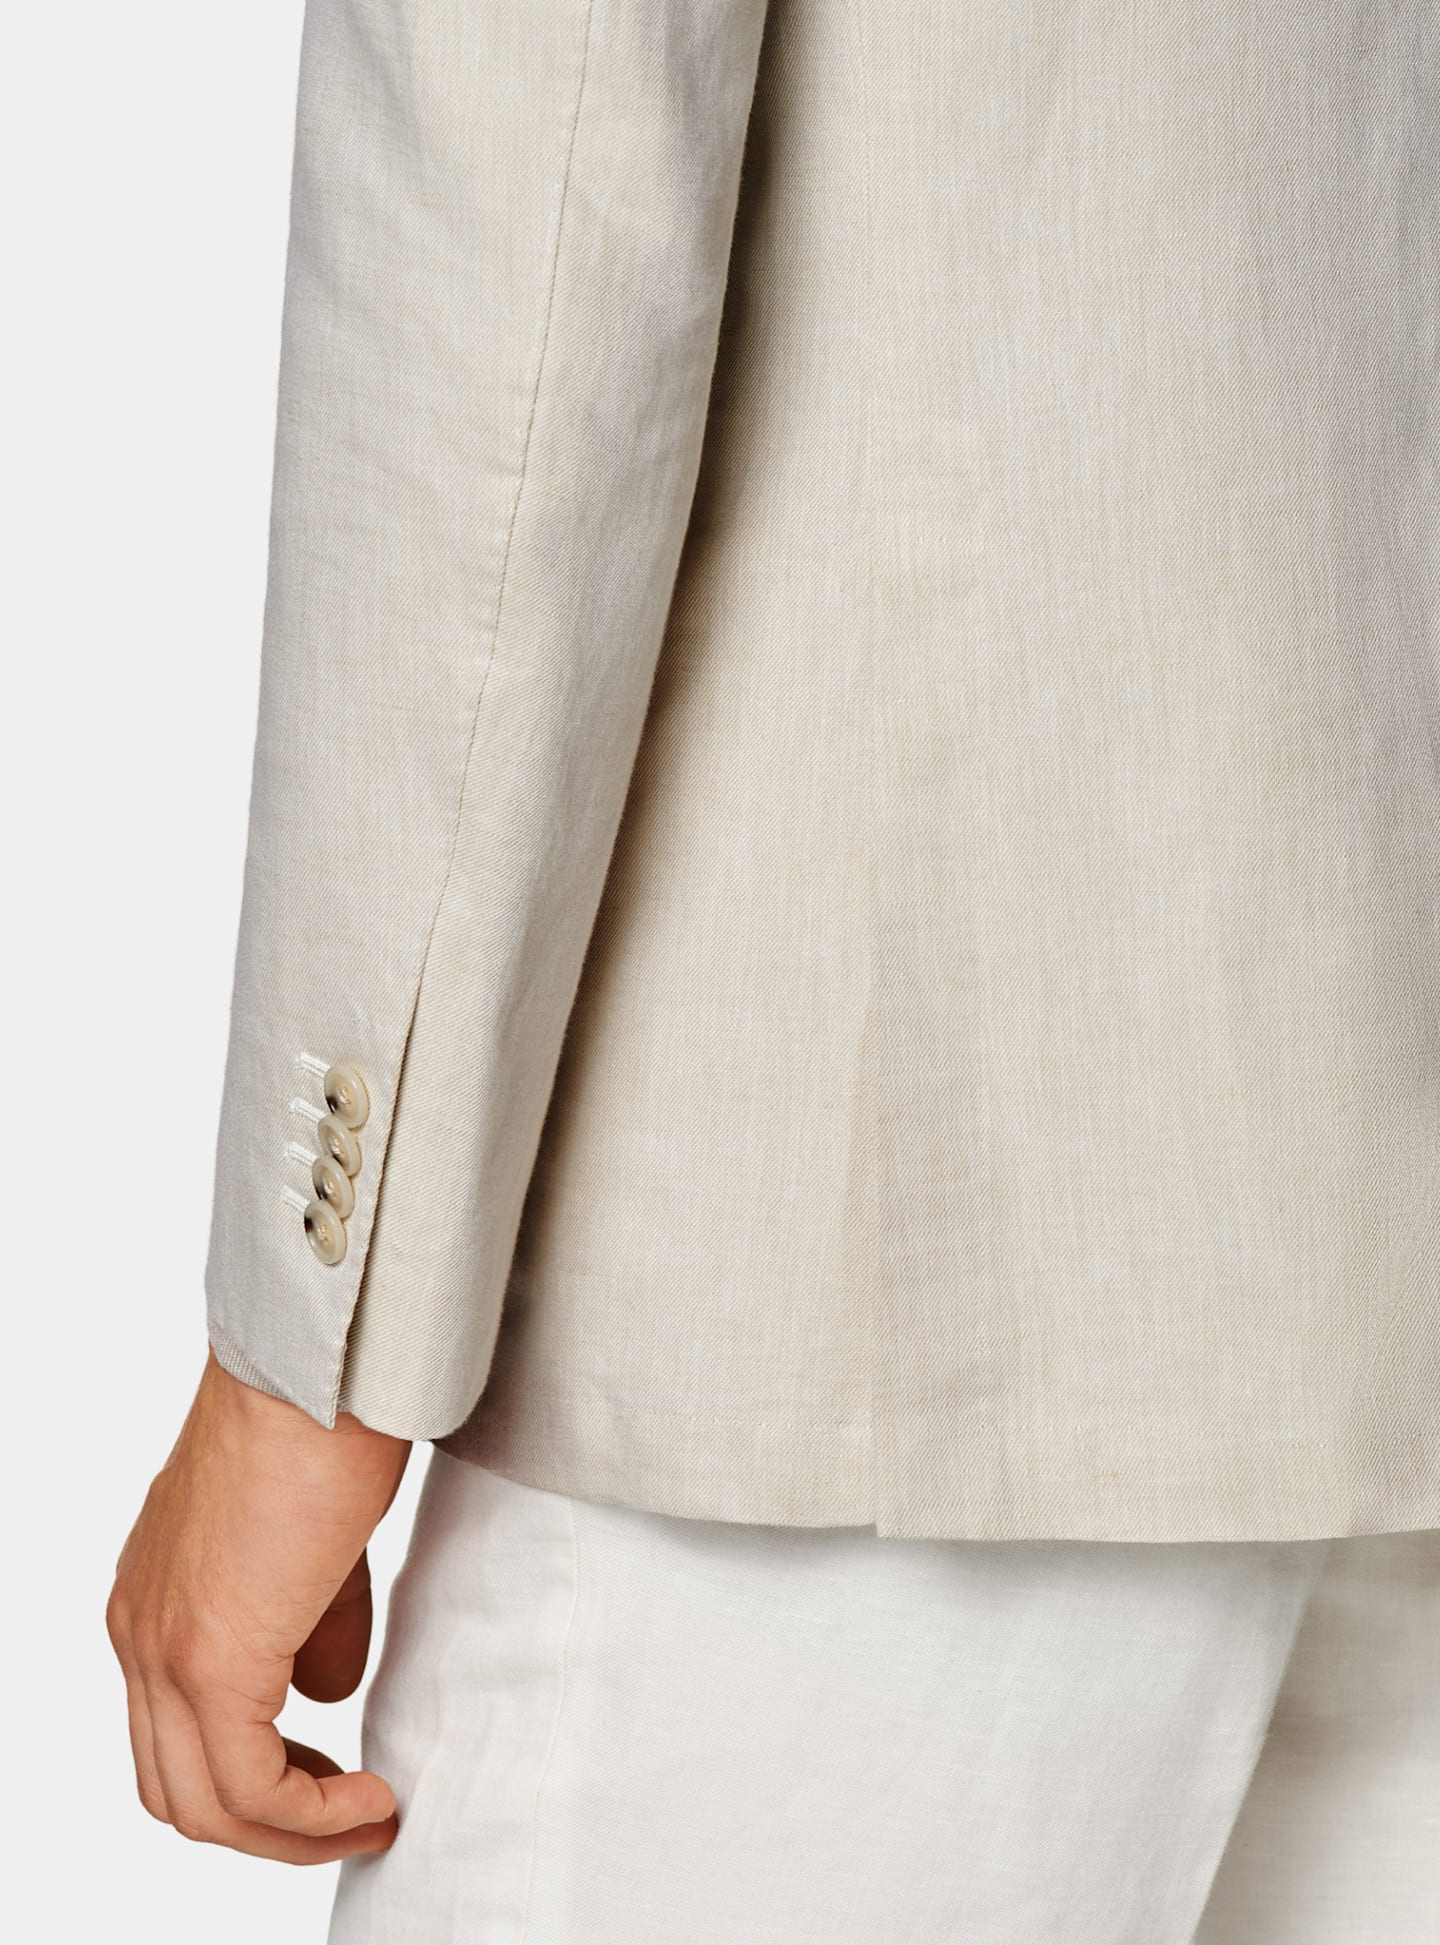 Detalle de un blazer marrón claro y una camisa gris topo.